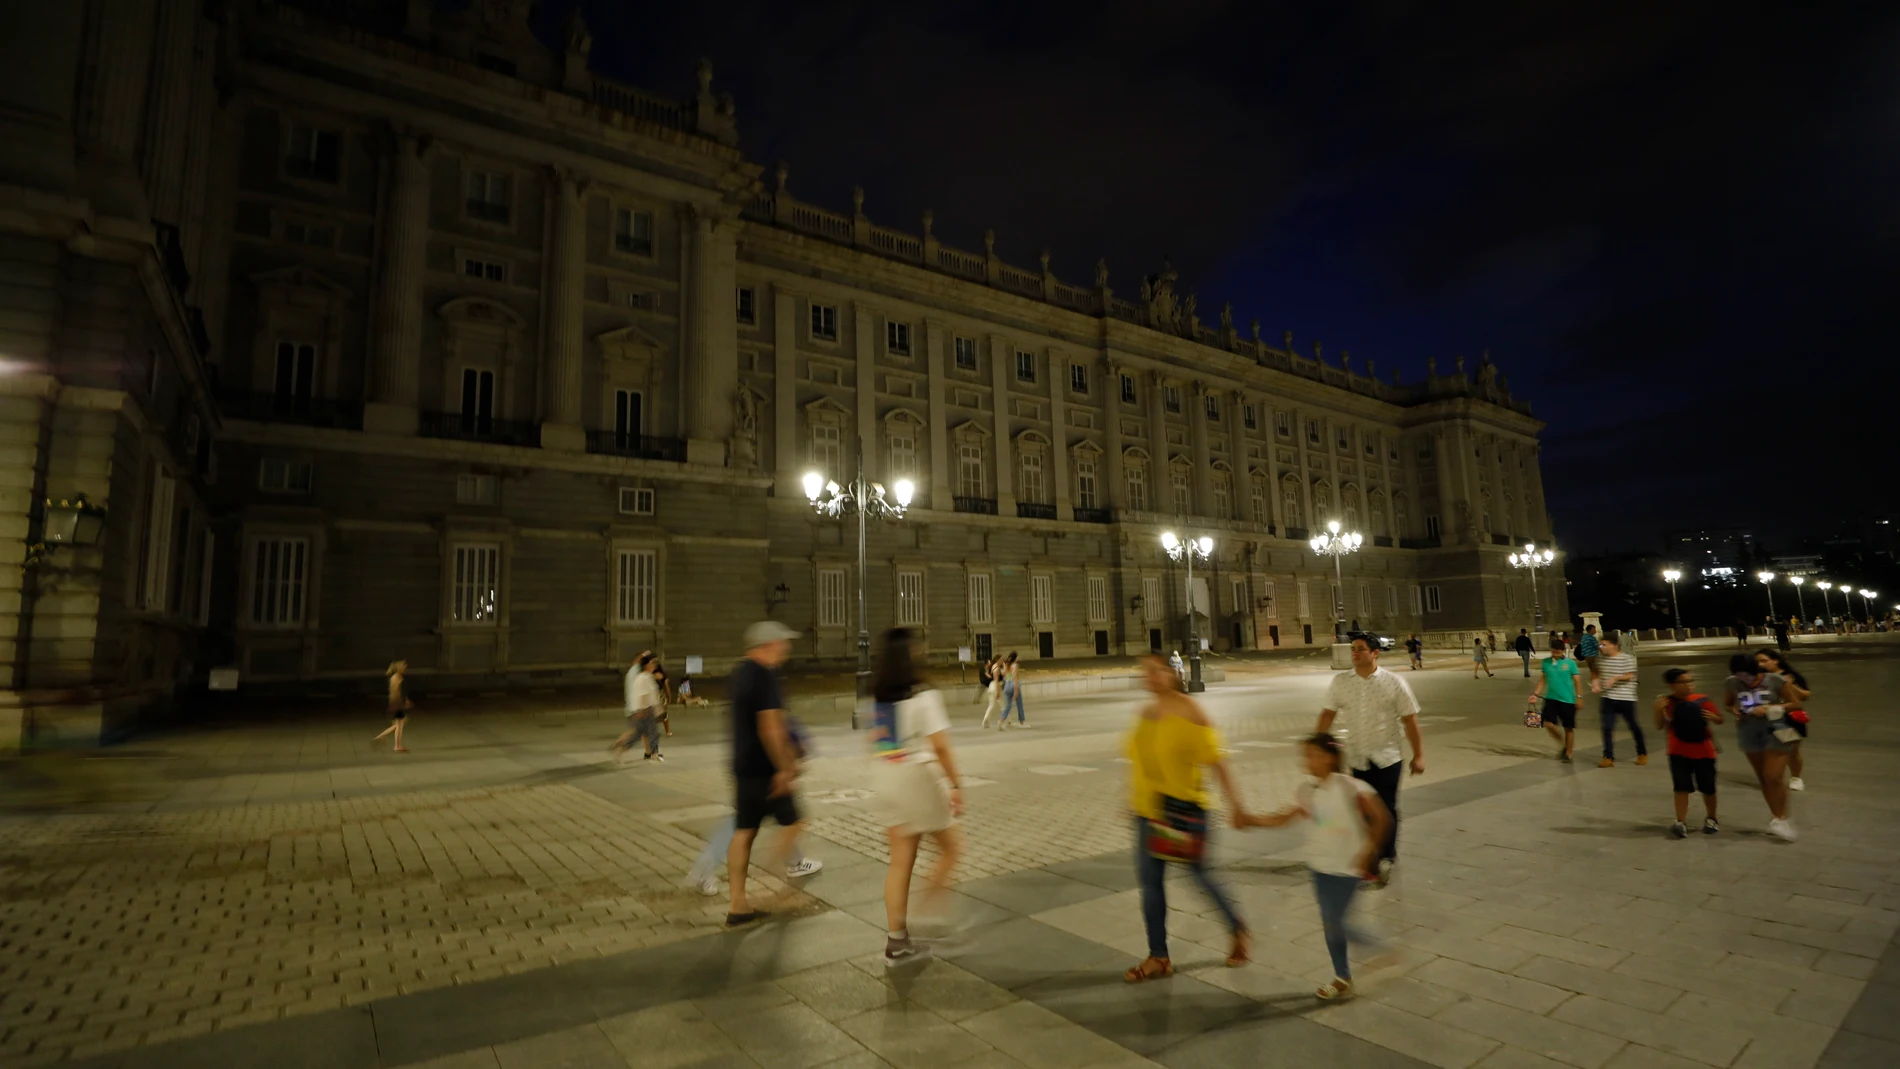 El Palacio Real de Madrid con la iluminación apagada